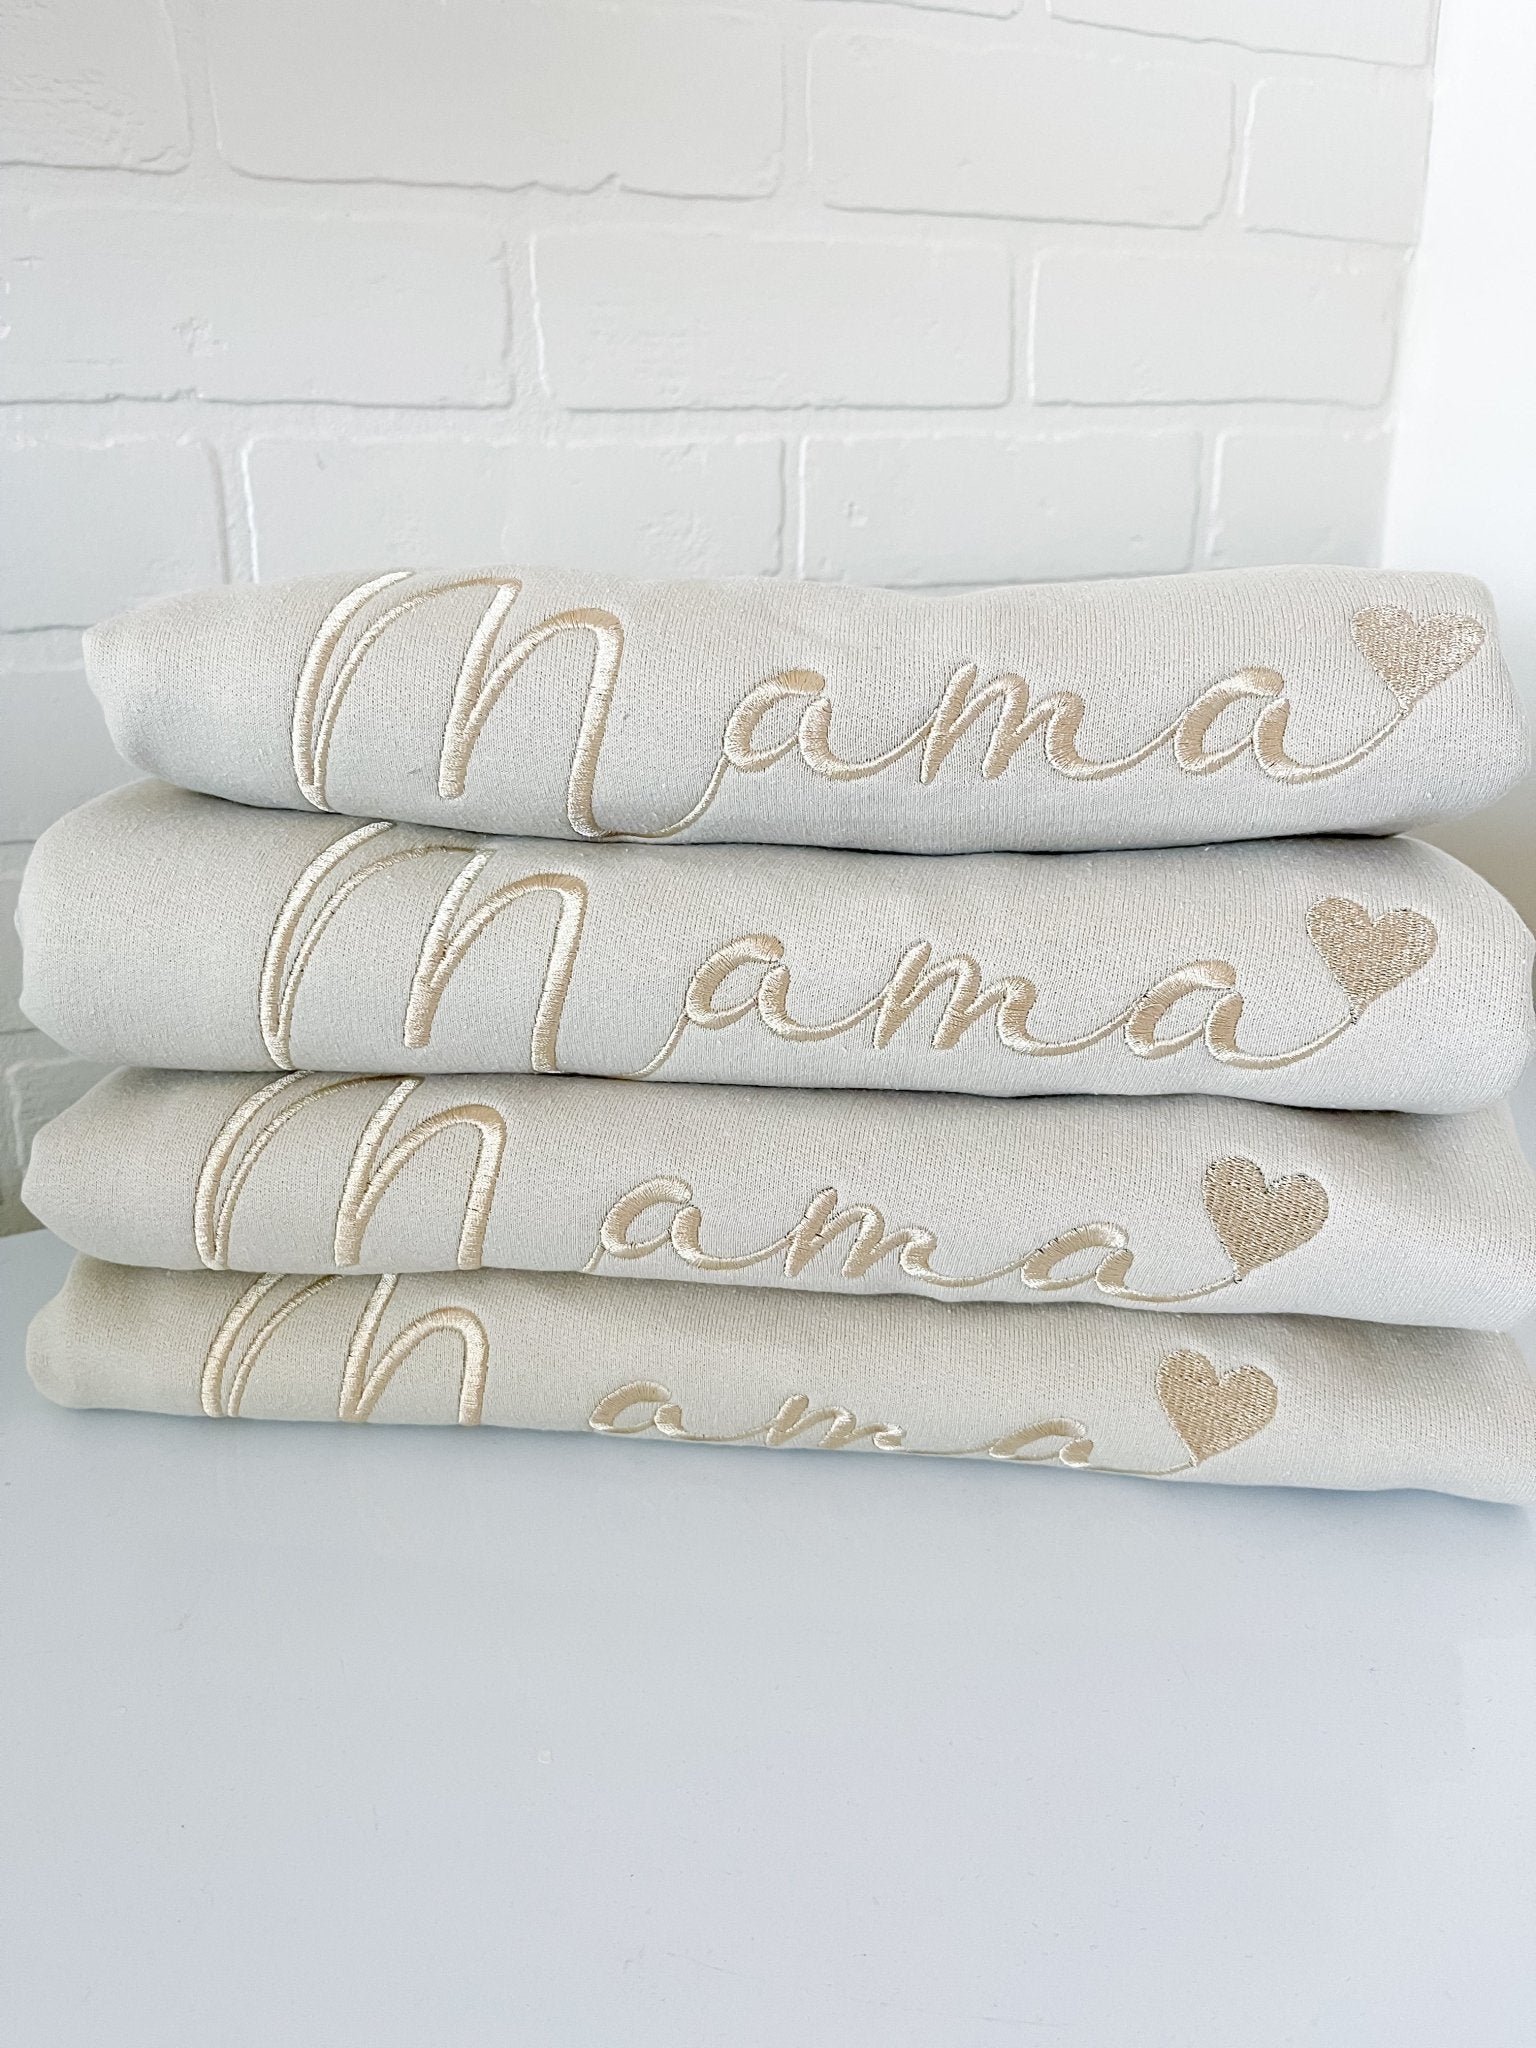 Mama Embroidered Crew Sweatshirt - Designs by Lauren Ann